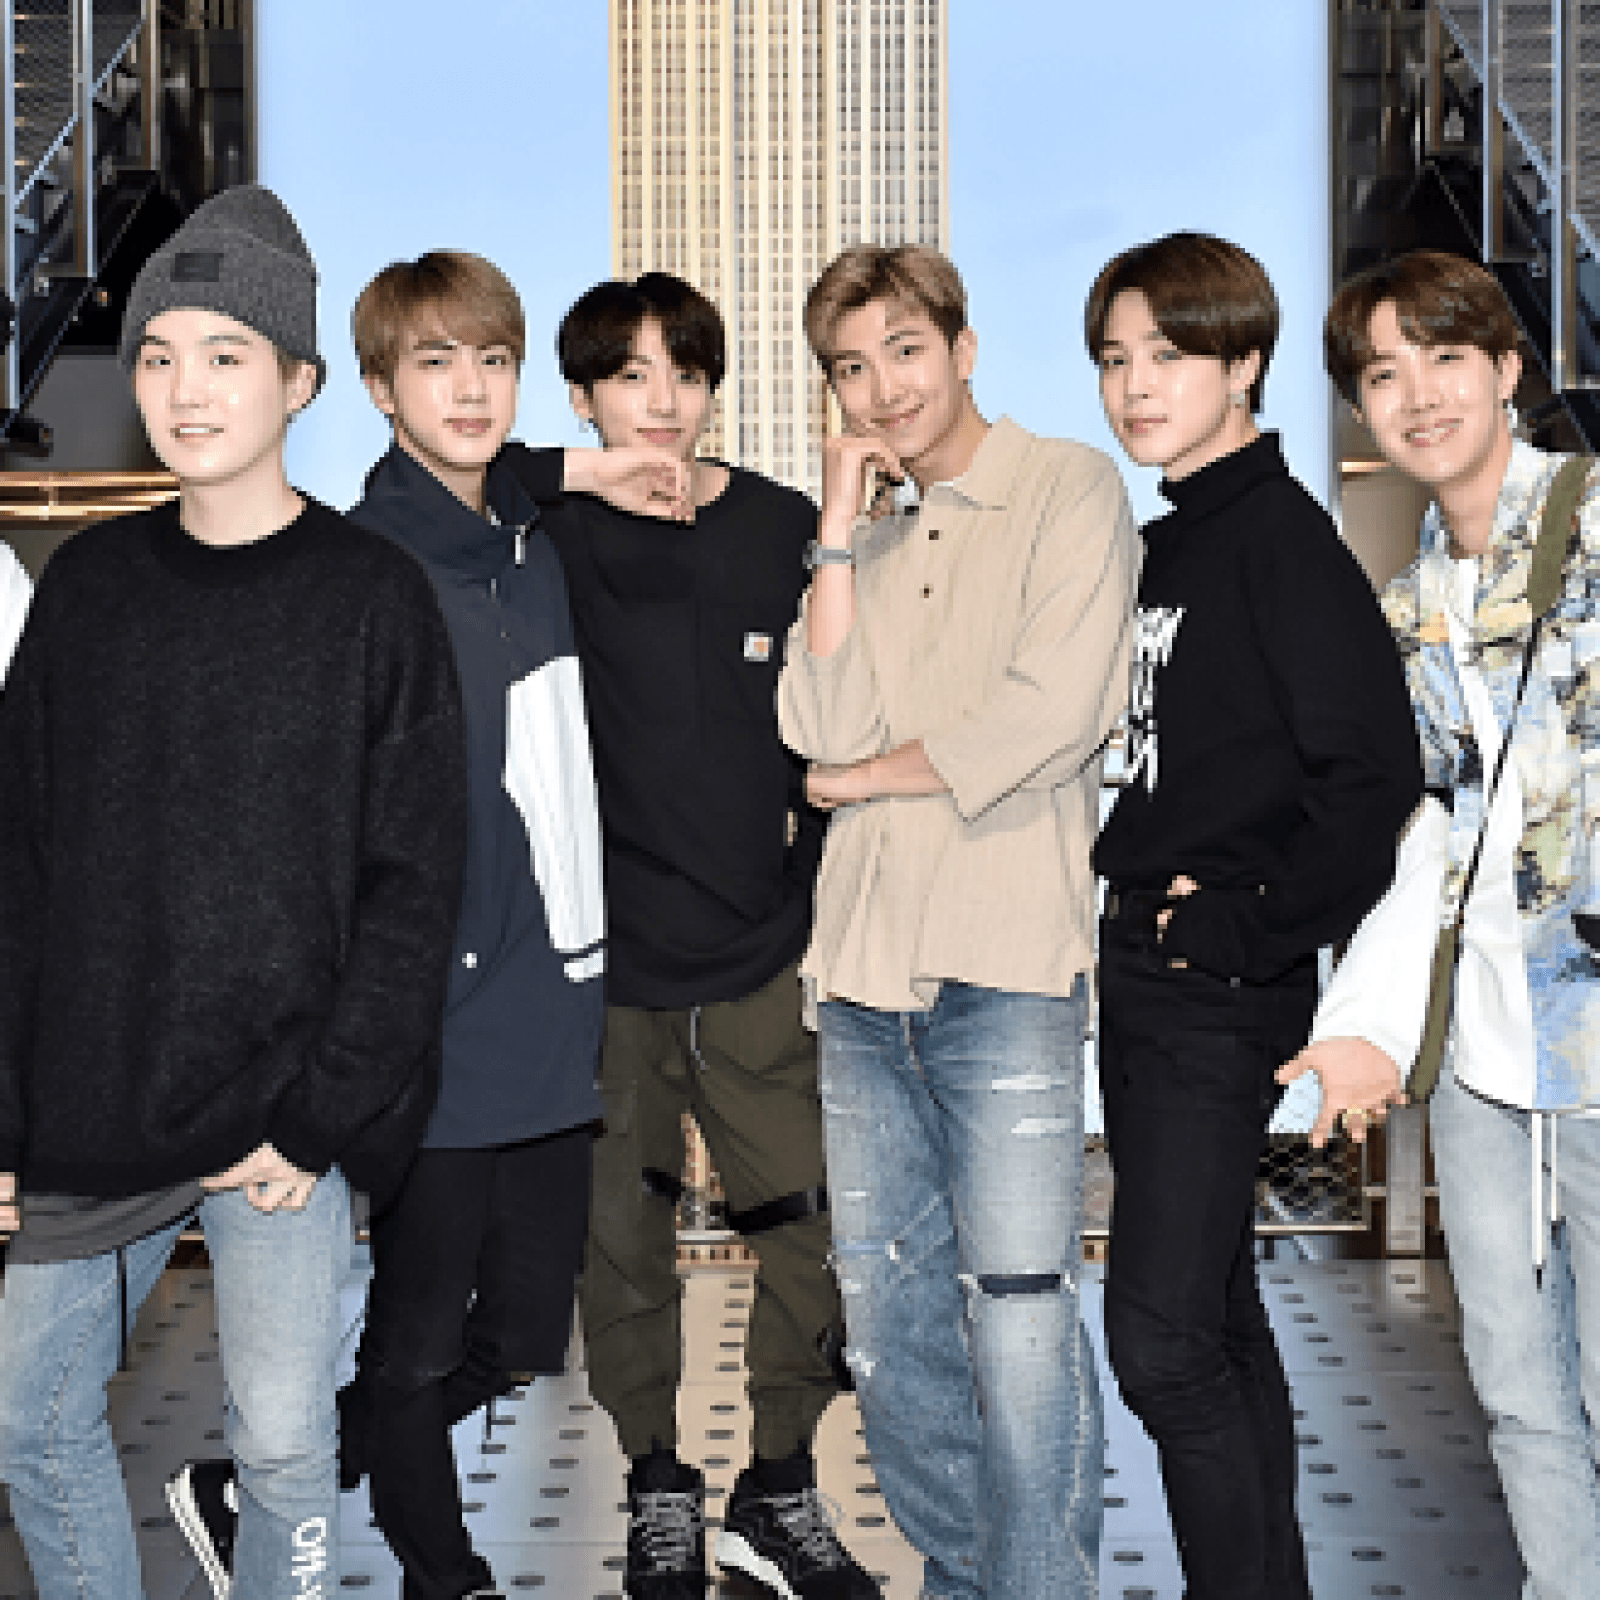 BTS Is Back: Fans Freak Out After K Pop Band Announces New Tour